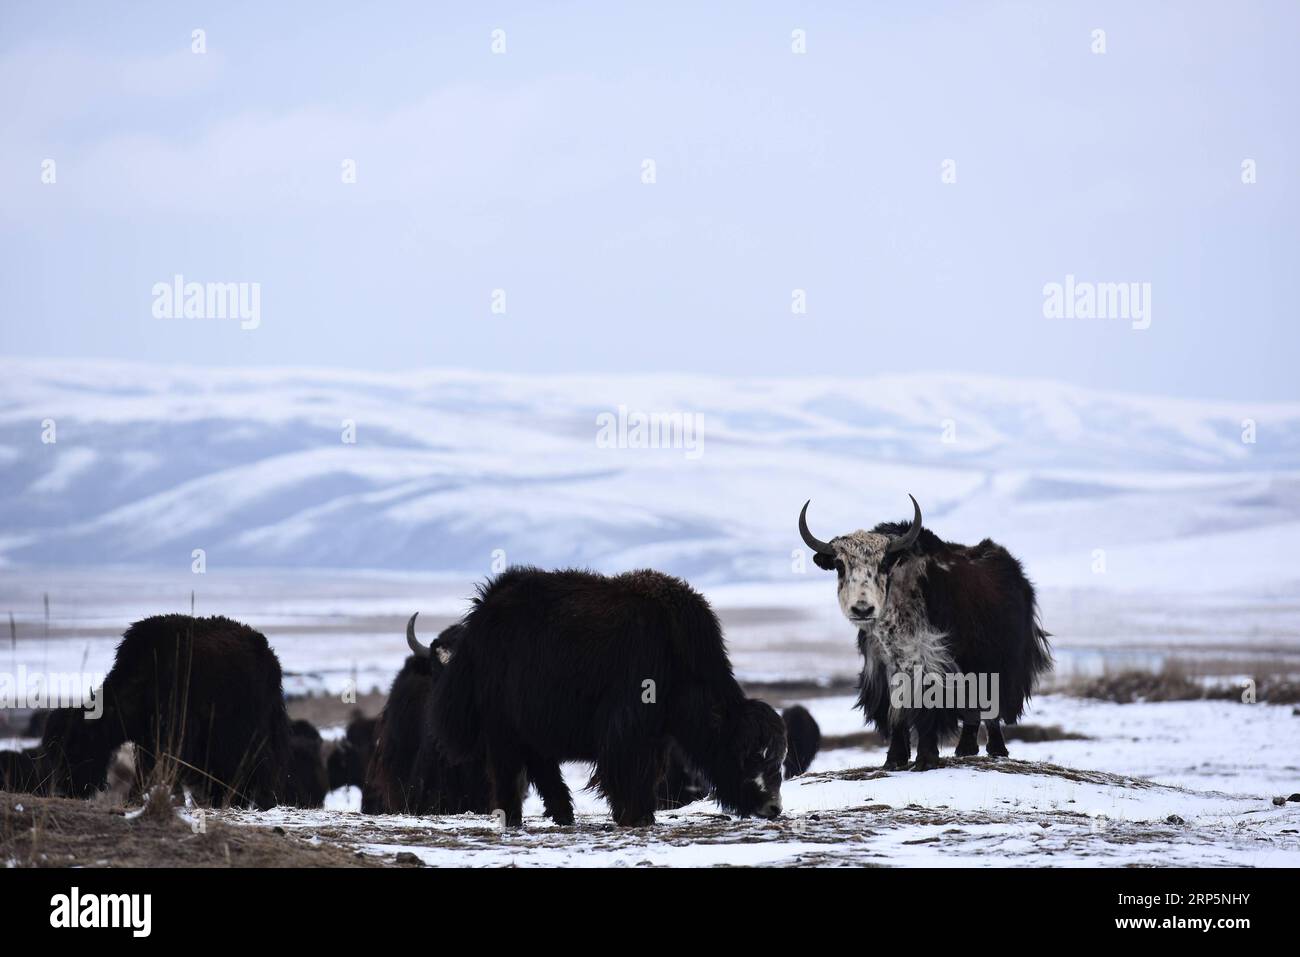 (181220) -- PÉKIN, 20 décembre 2018 -- Un troupeau de yaks est observé sur des prairies enneigées dans le comté de Haiyan de la préfecture autonome tibétaine de Haibei, province du Qinghai au nord-ouest de la Chine, le 13 avril 2018. La National Forestry and Grassland Administration (NFGA) de la Chine a signé un accord avec le géant technologique Tencent le 19 décembre 2018 pour réprimer conjointement le commerce illégal des espèces sauvages en ligne. Il s agit du dernier exemple des efforts déployés par le régulateur pour lutter contre les crimes en ligne de plus en plus répandus commis sur les réseaux sociaux et les plateformes de commerce électronique. Lors d'une conférence de presse de juin, la police forestière en Chine s Wildlife-r Banque D'Images